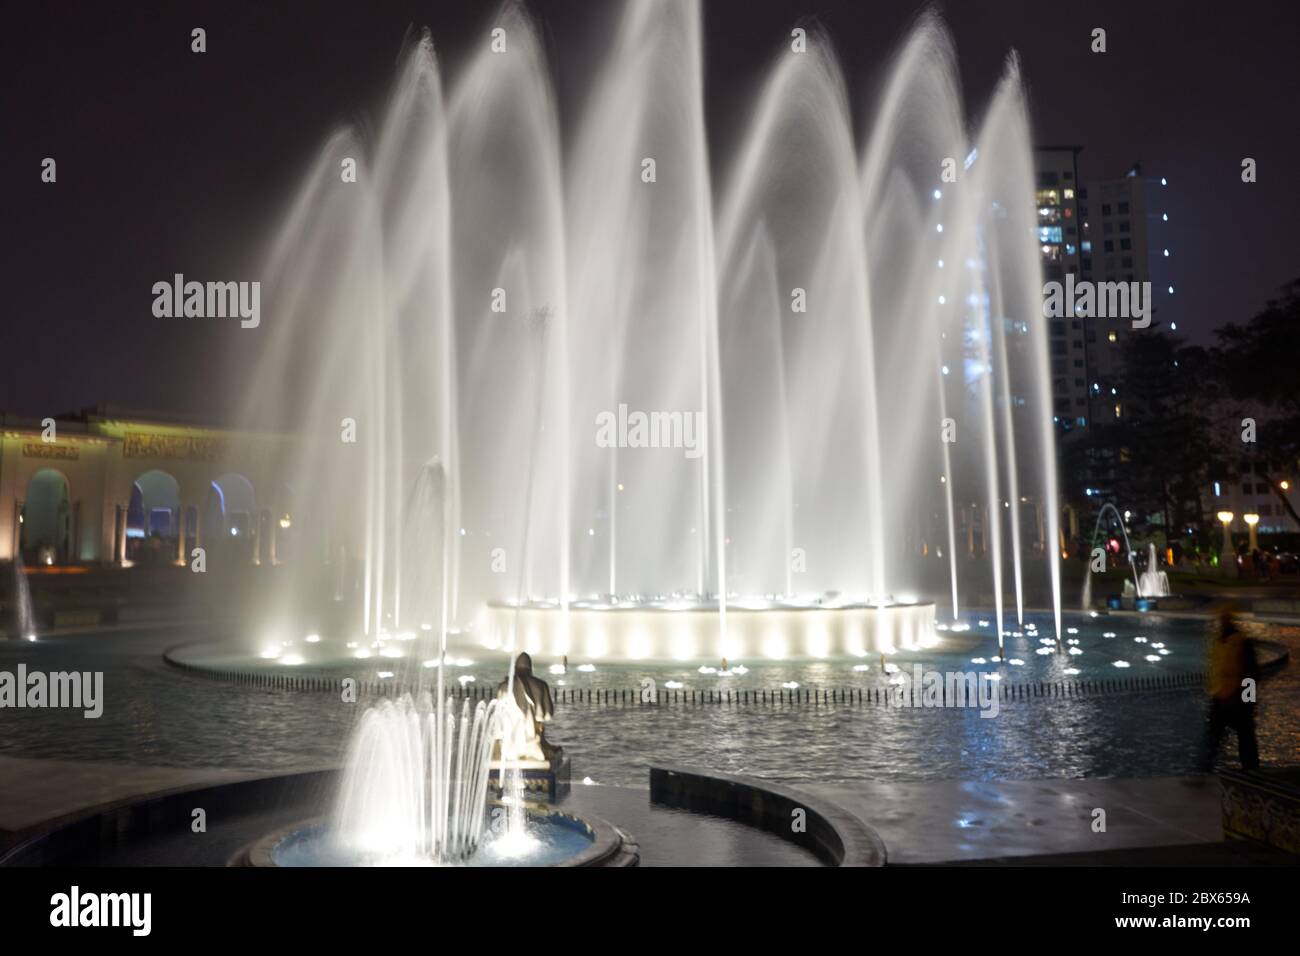 Fountain show of circuito magico del agua Stock Photo